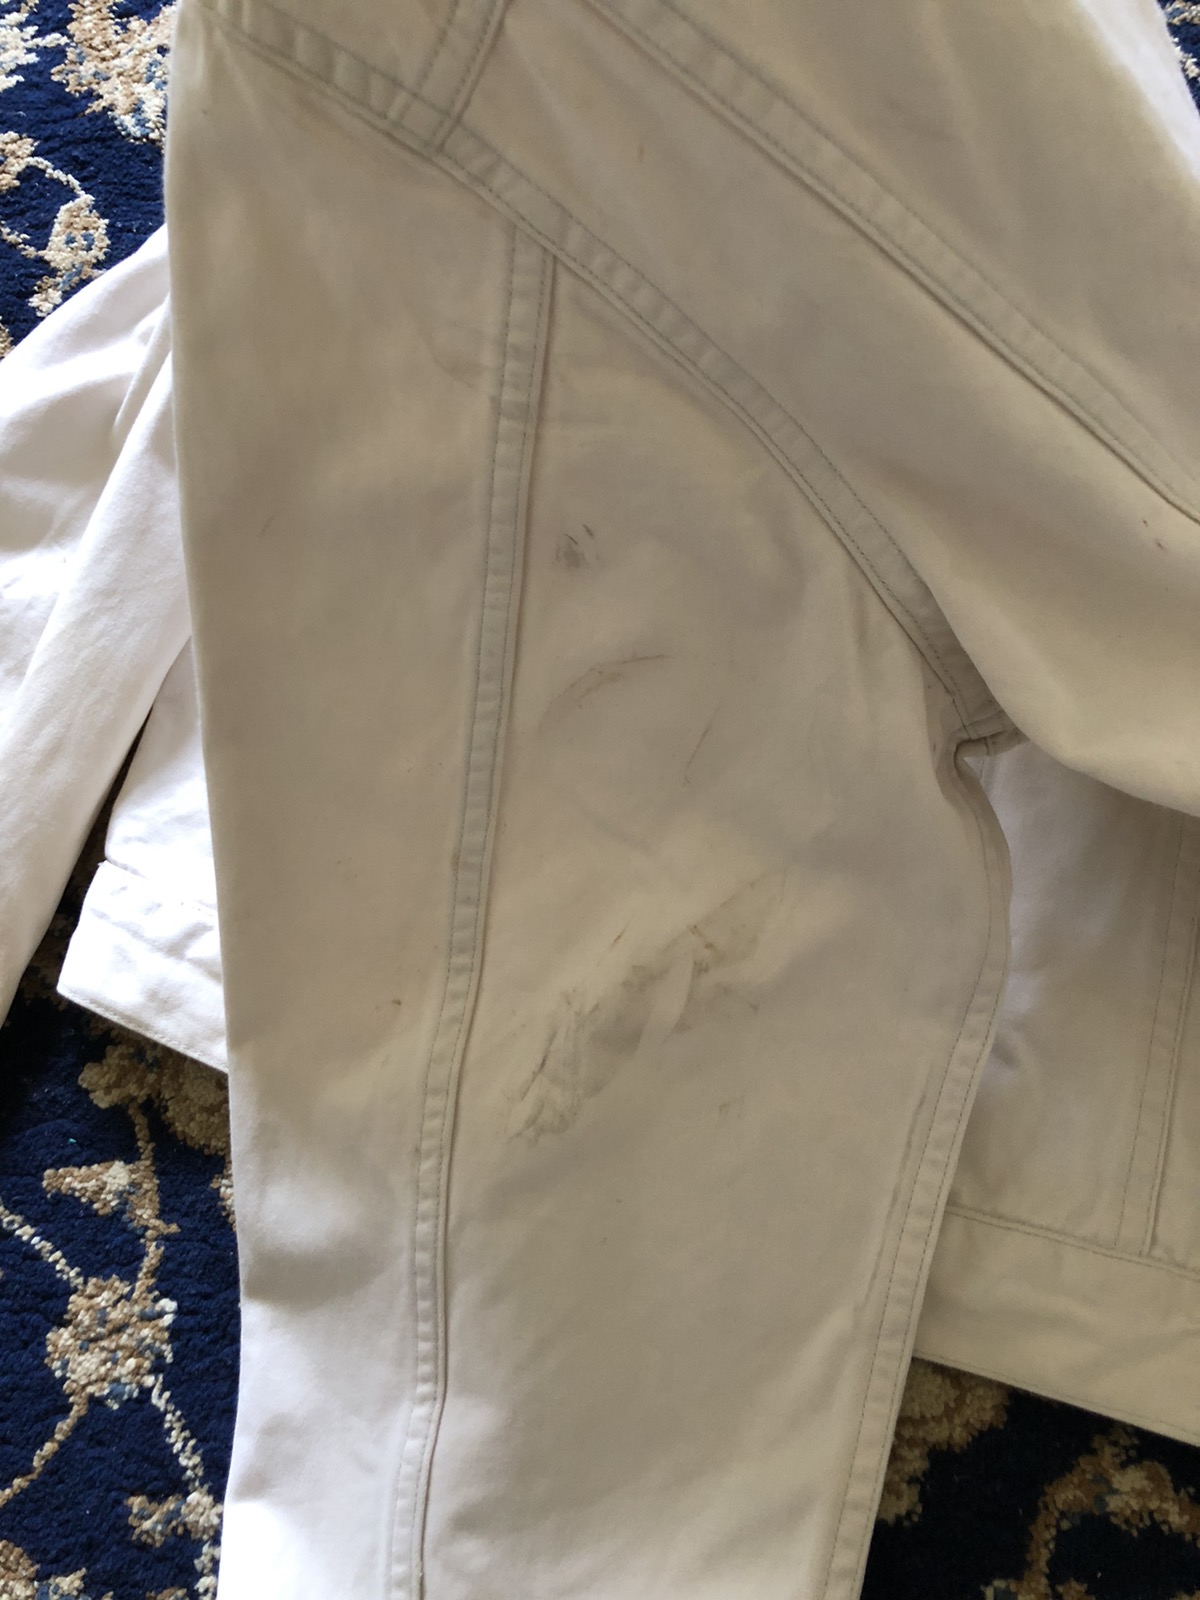 1998 Helmut Lang Off-white Vintage Cotton Jacket - 10